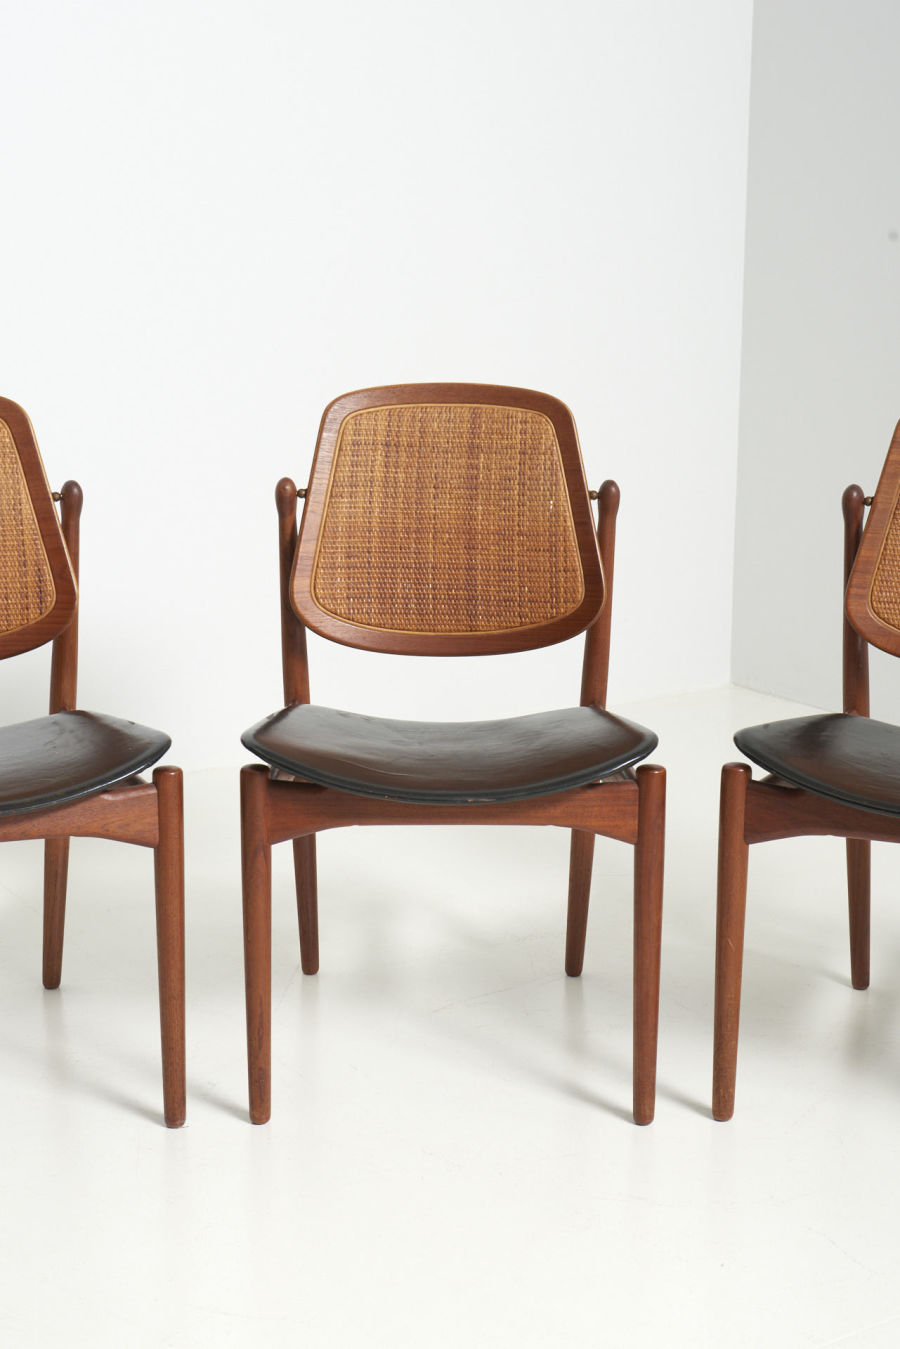 modestfurniture-vintage-2830-arne-vodder-dining-chairs-france-son02